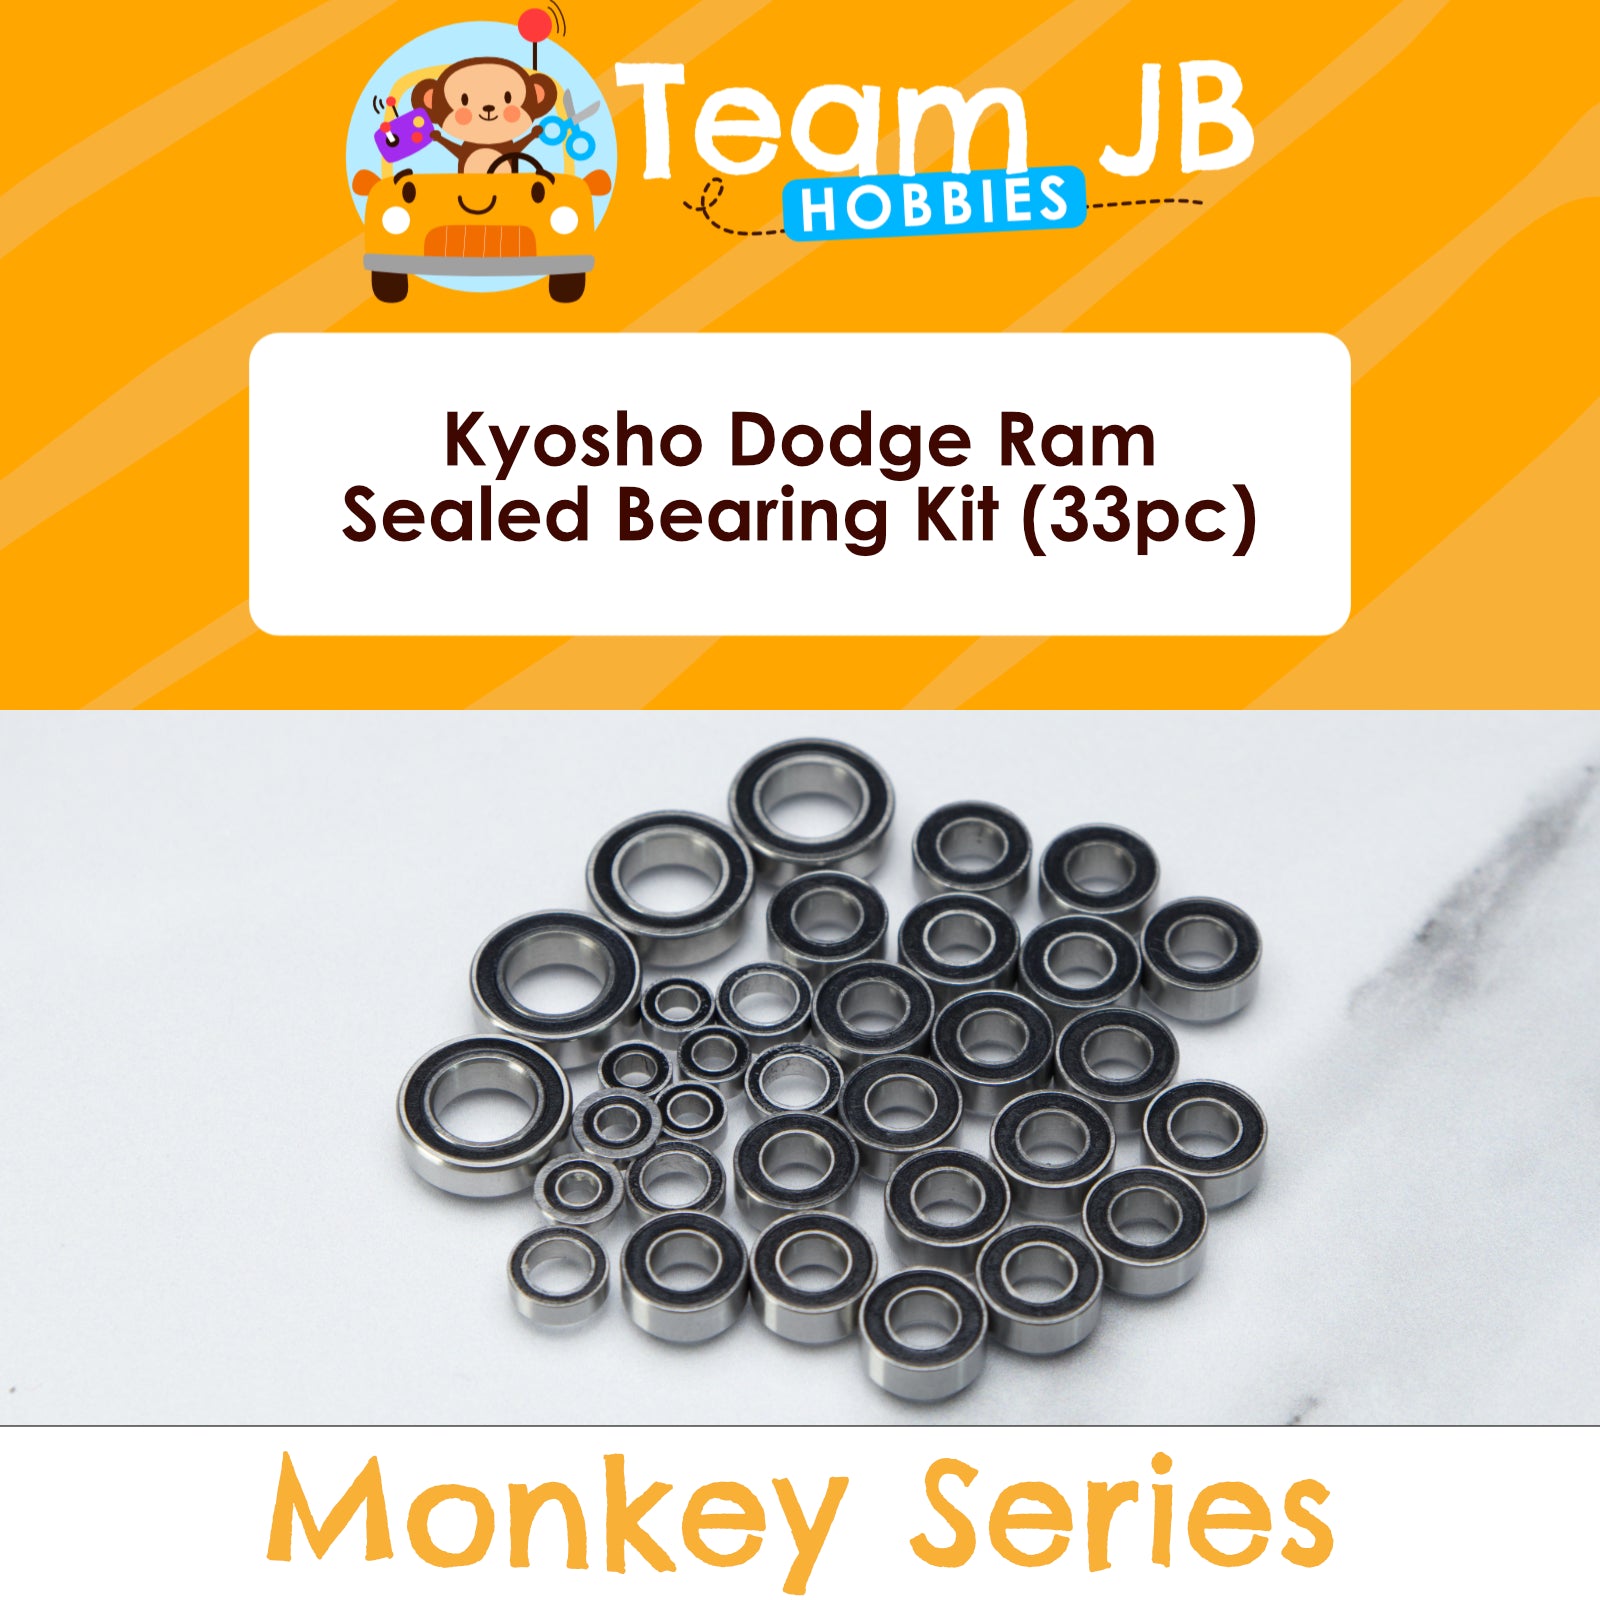 Kyosho Dodge Ram - Sealed Bearing Kit